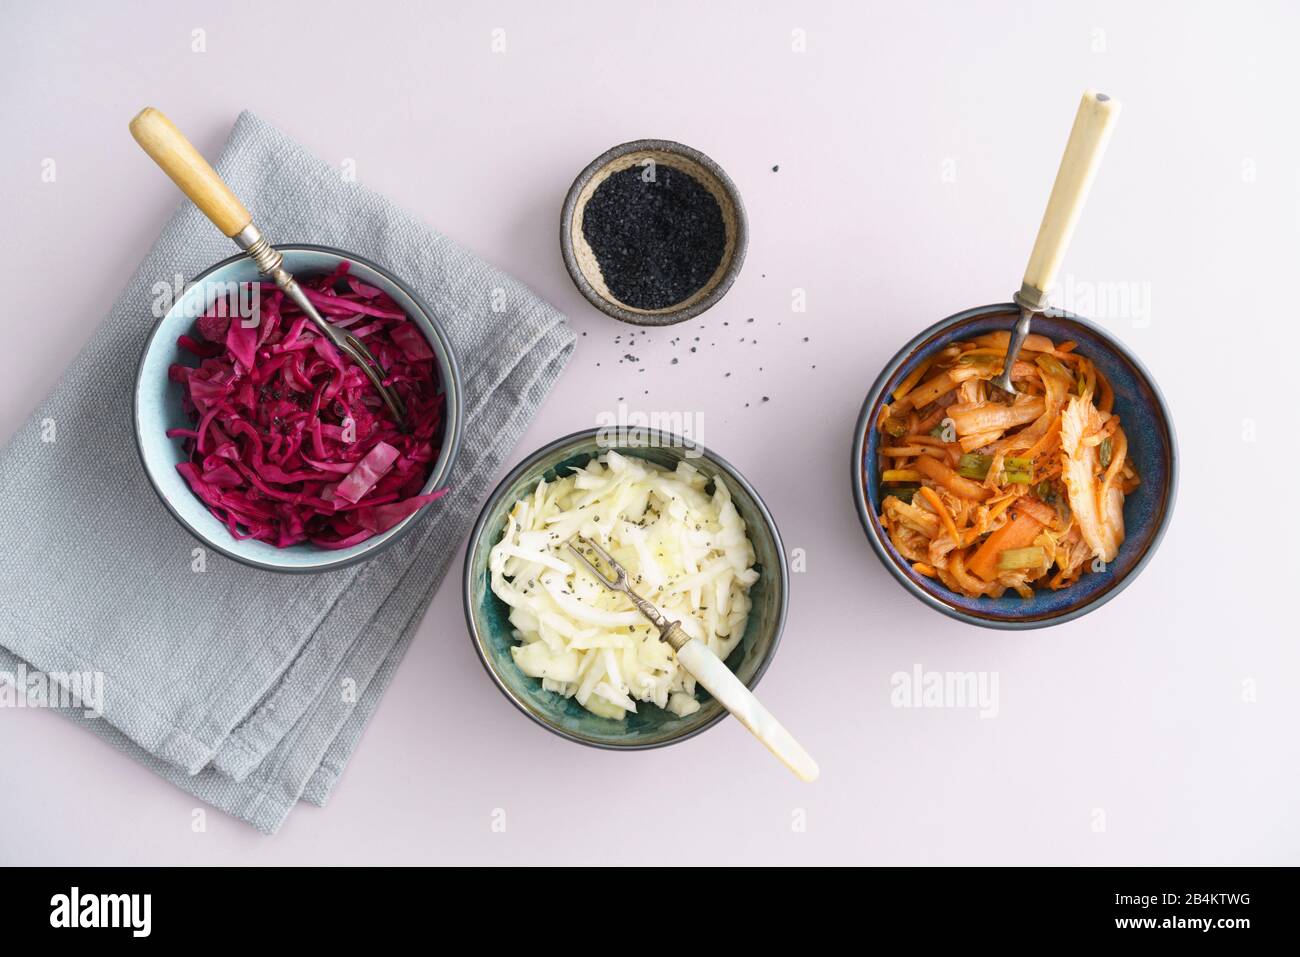 Repollo blanco, kimchi y repollo rojo fermentados, encurtidos, servidos en cuencos pequeños Foto de stock